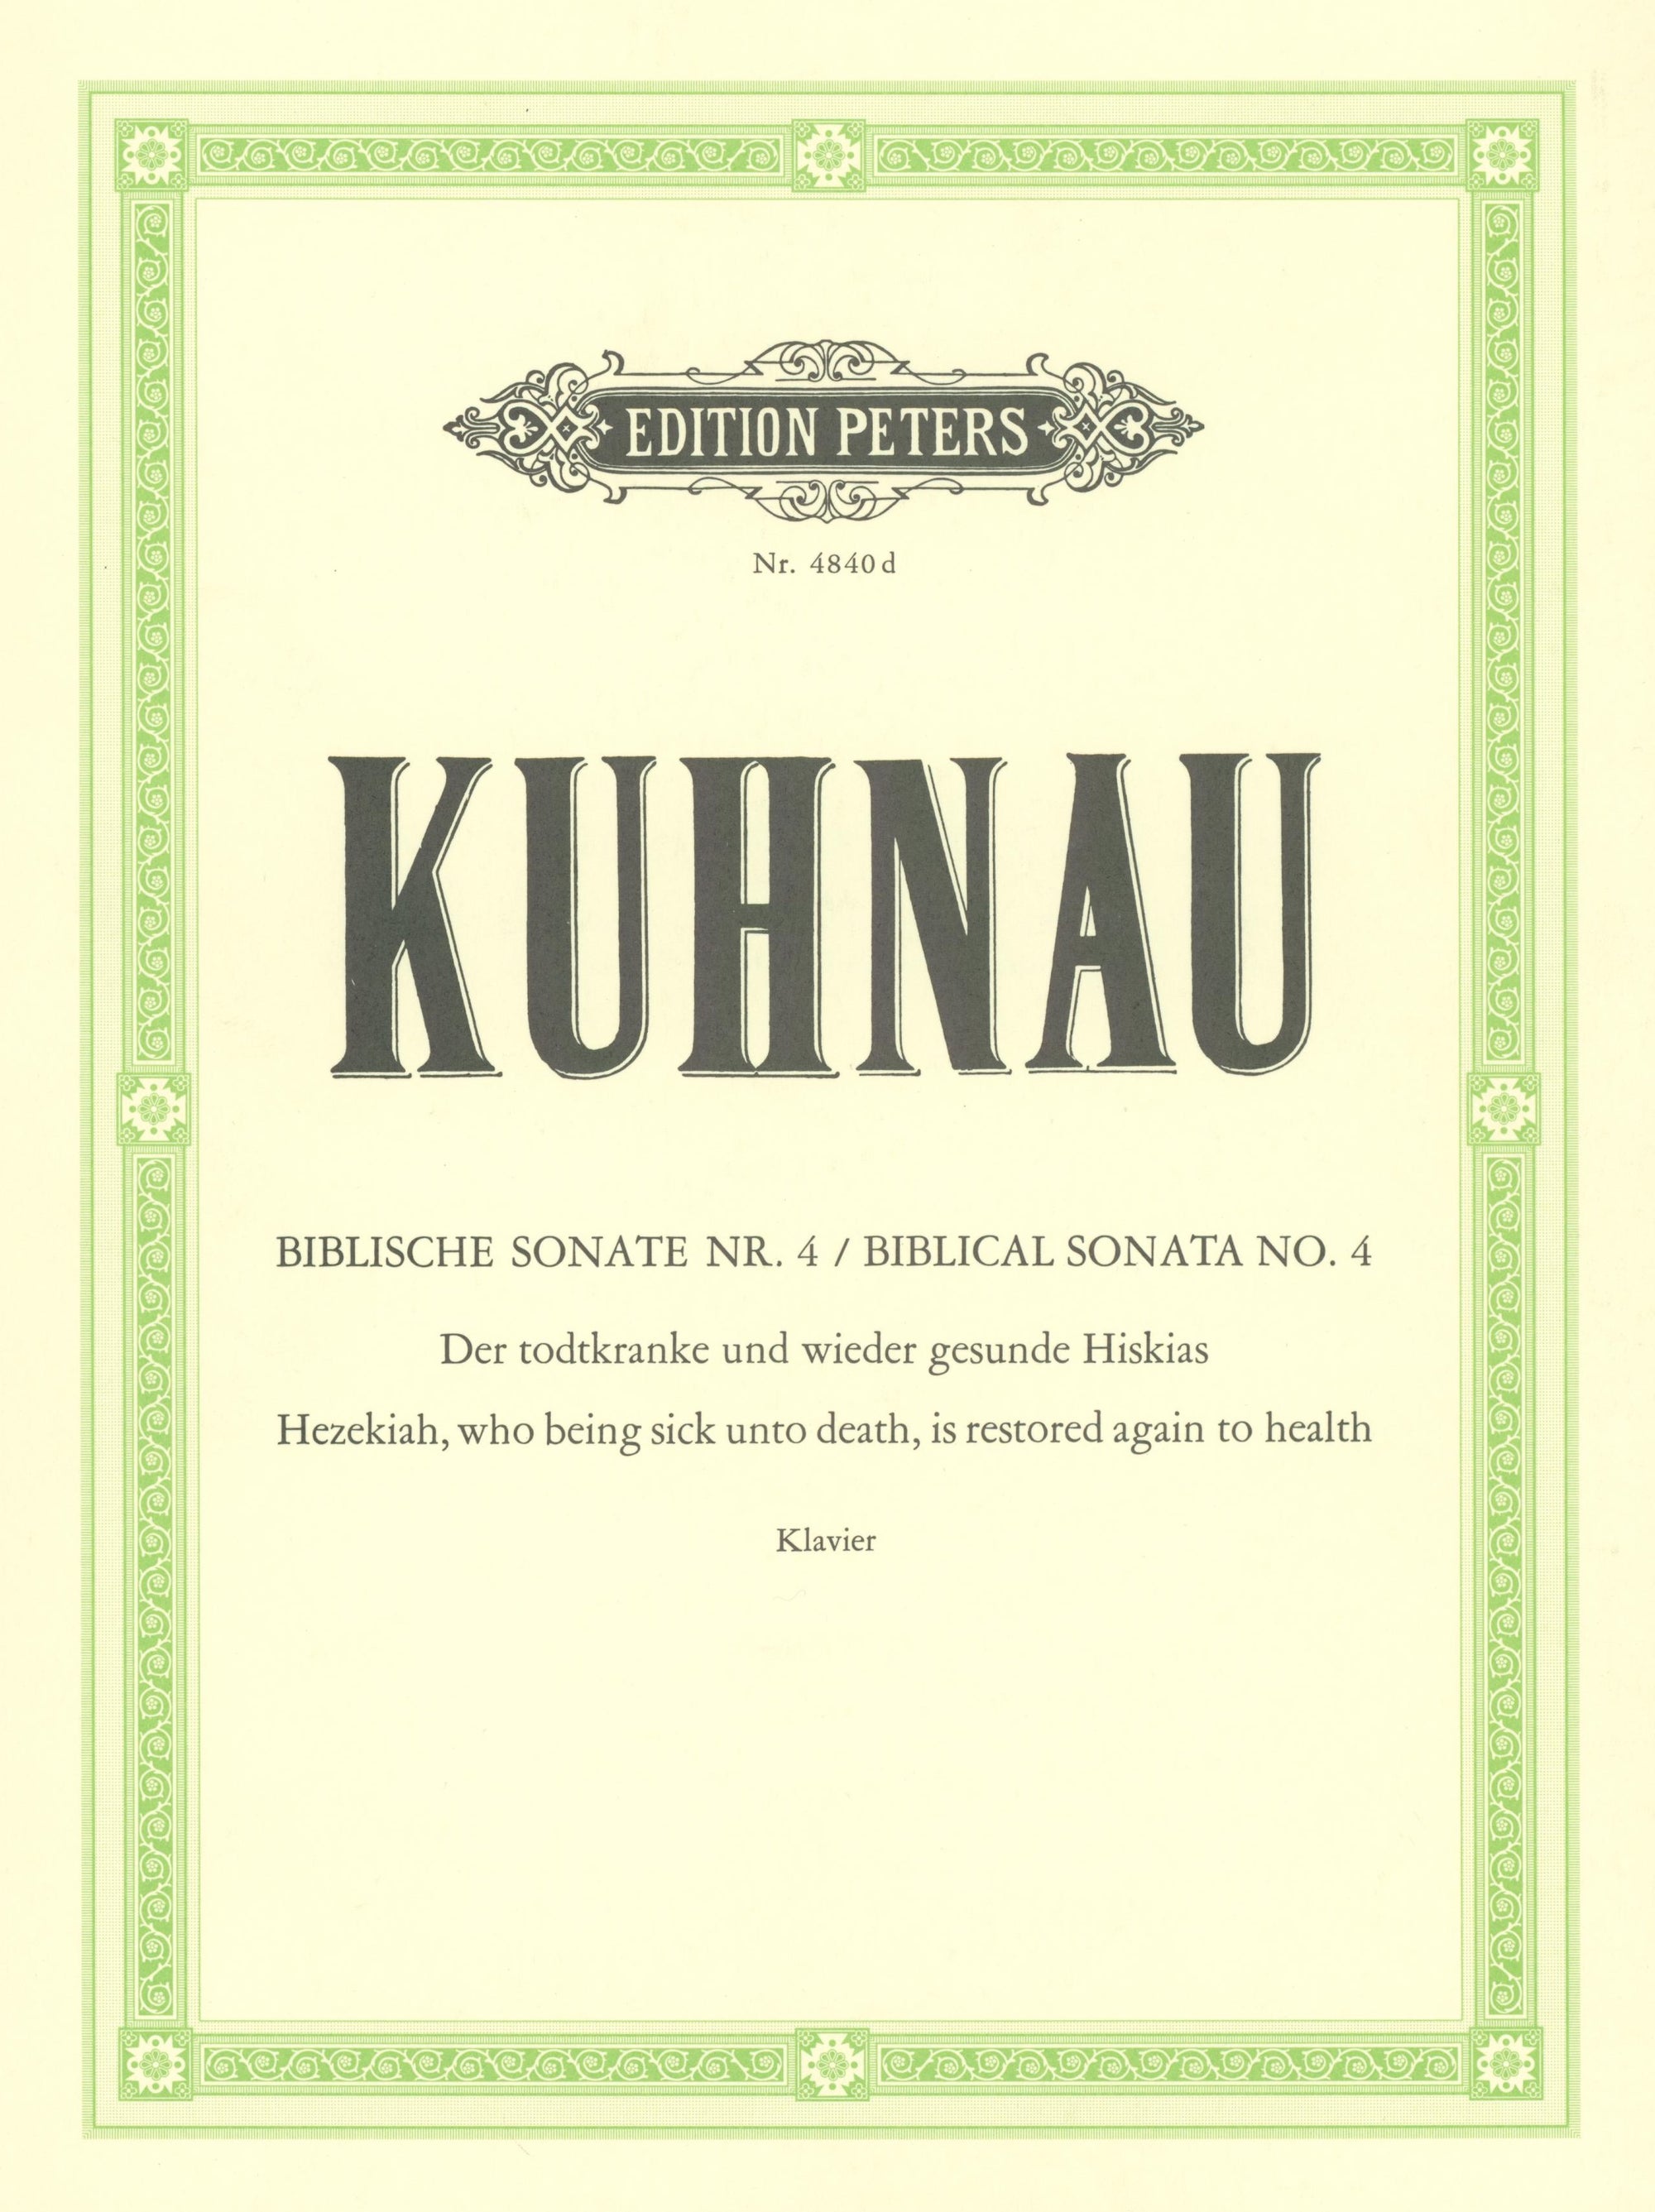 Kuhnau: Hezekiah, who being Sick, is restored